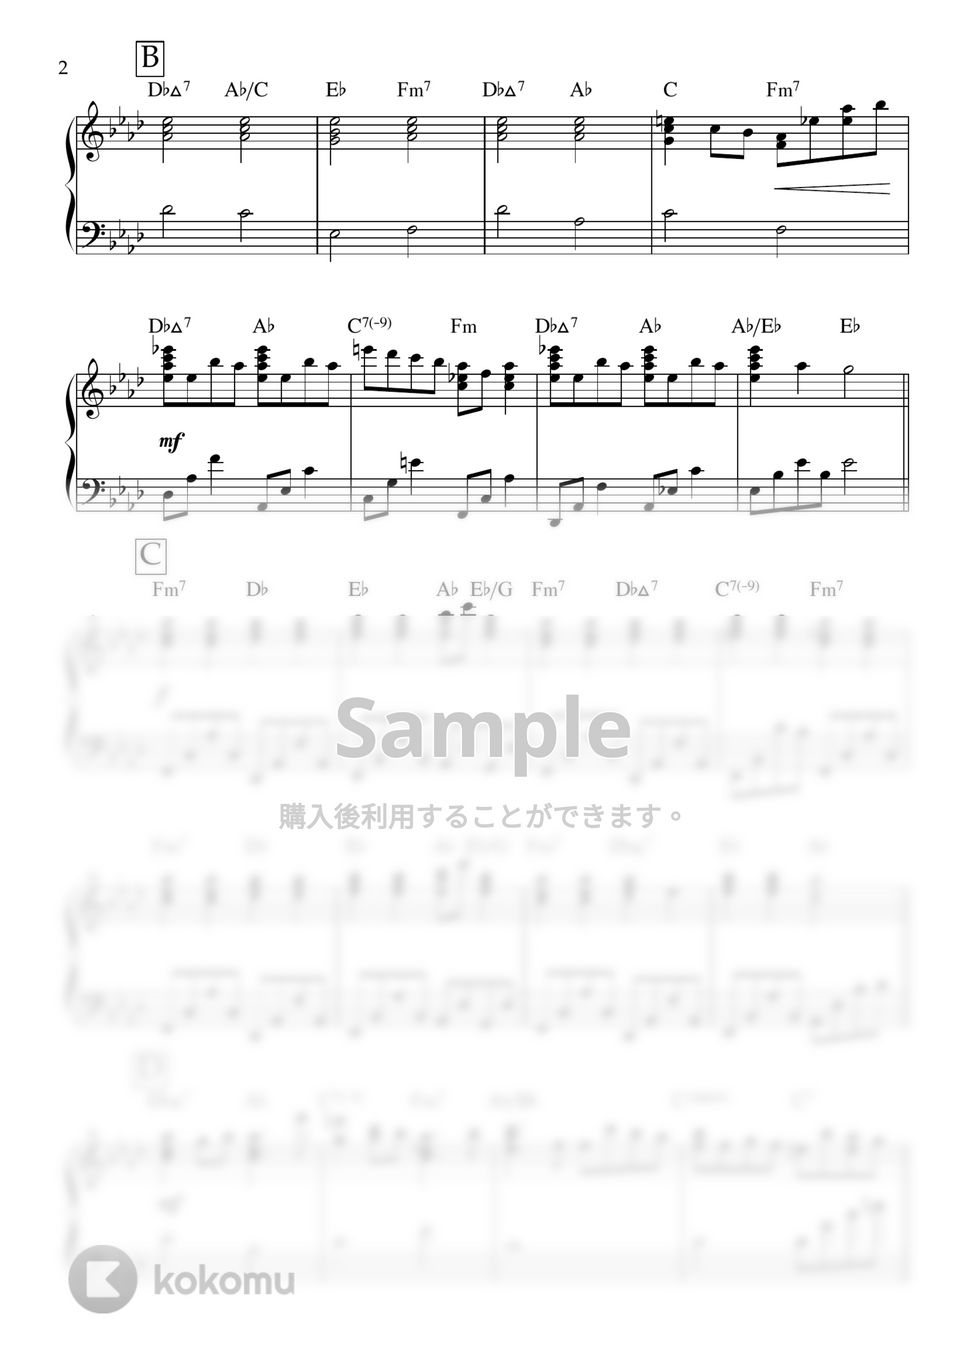 ロクデナシ - 愛が灯る (ピアノ,伴奏) by ヒット